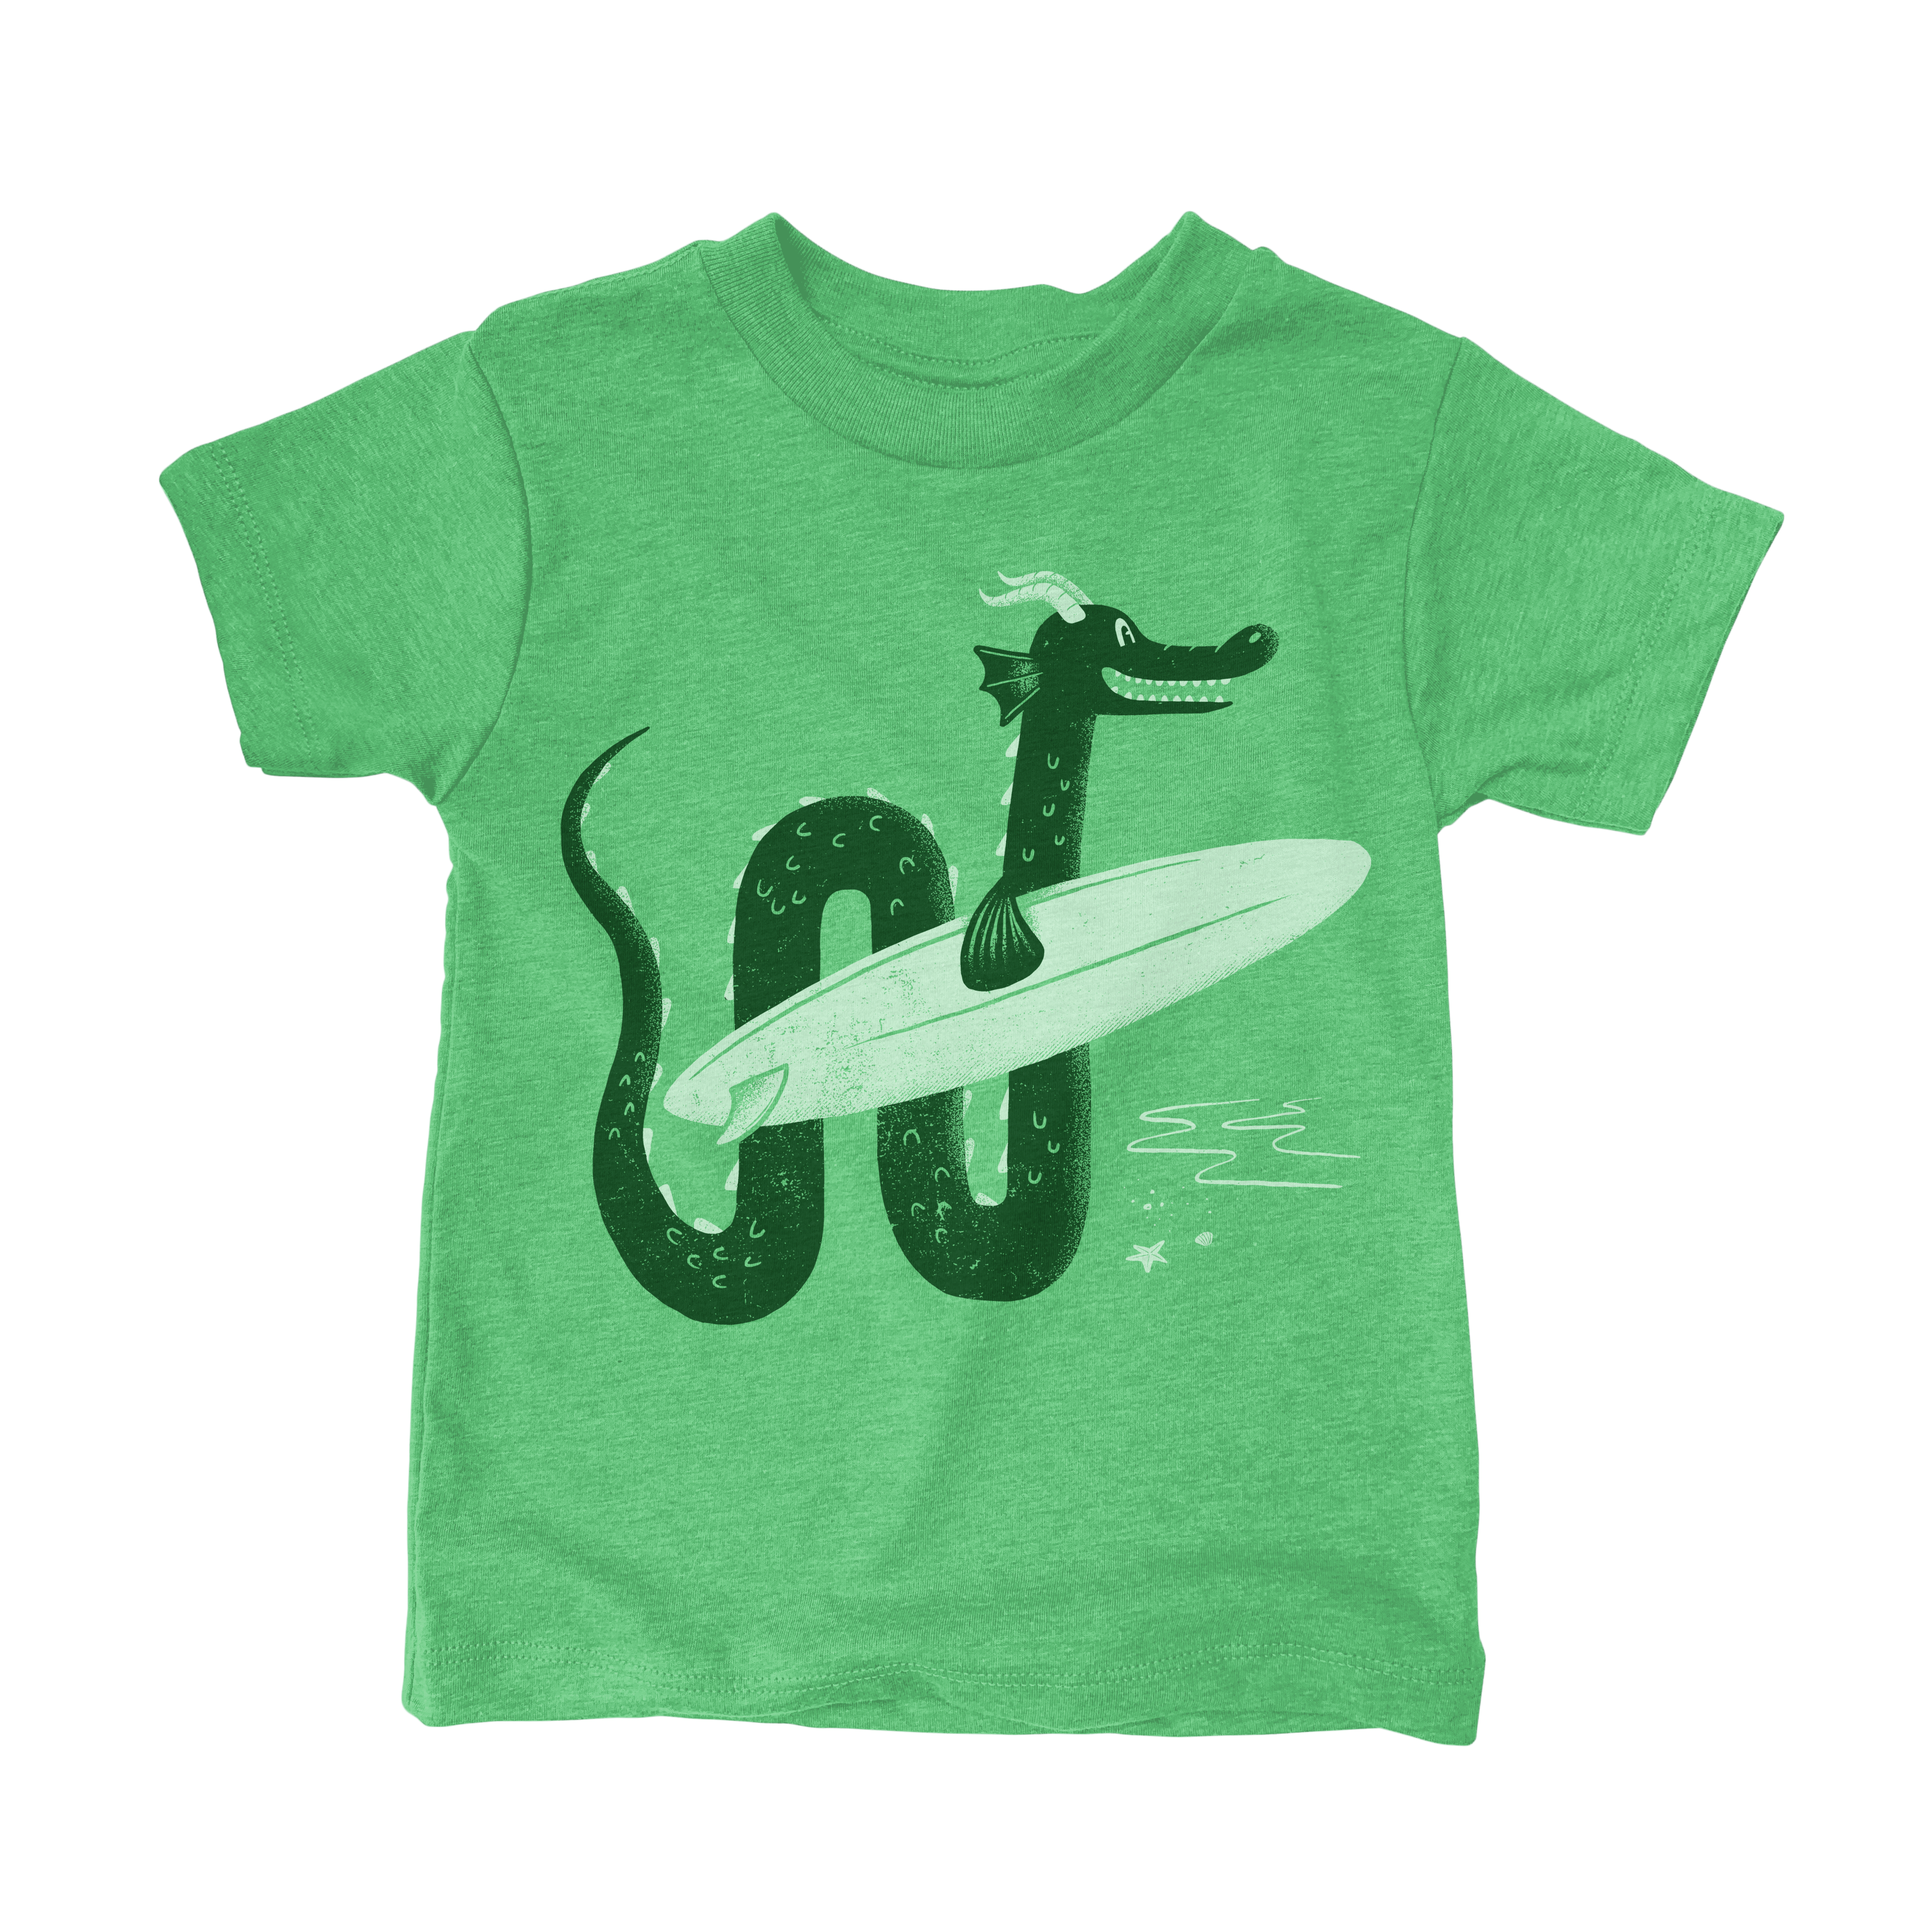 Surf Monster Kids Tee Shirt: Green